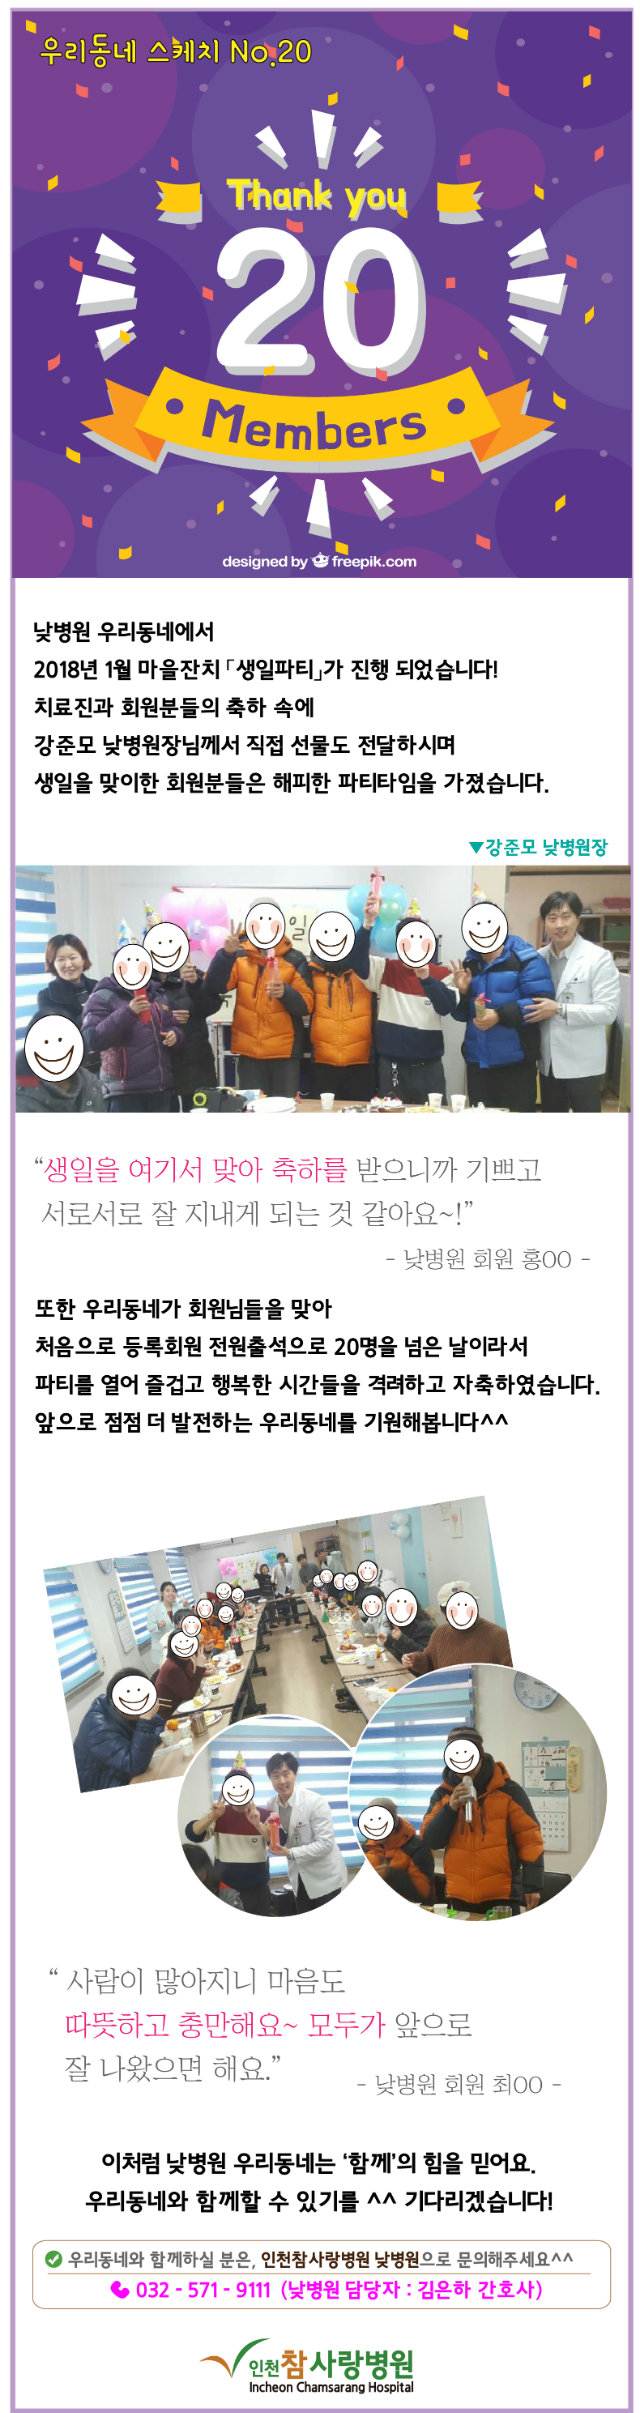 사본 -2018참사랑소식 1월-낮병원20.20인멤버파티.png